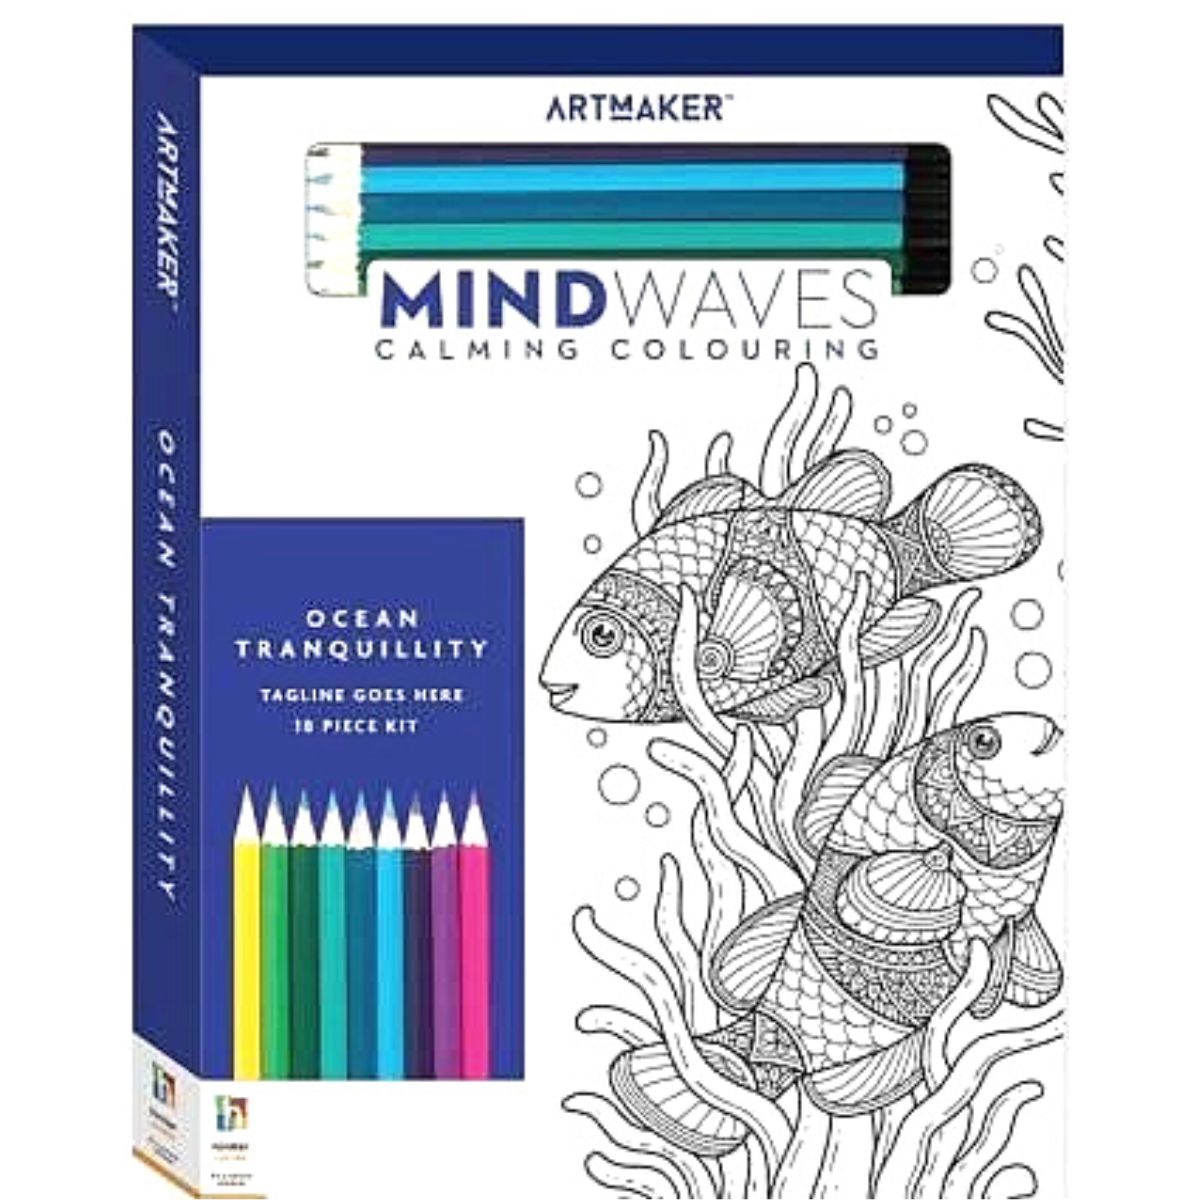 http://www.homesnliving.com.au/cdn/shop/products/art-maker-mindwaves-calming-colouring-book-1.jpg?v=1673700903